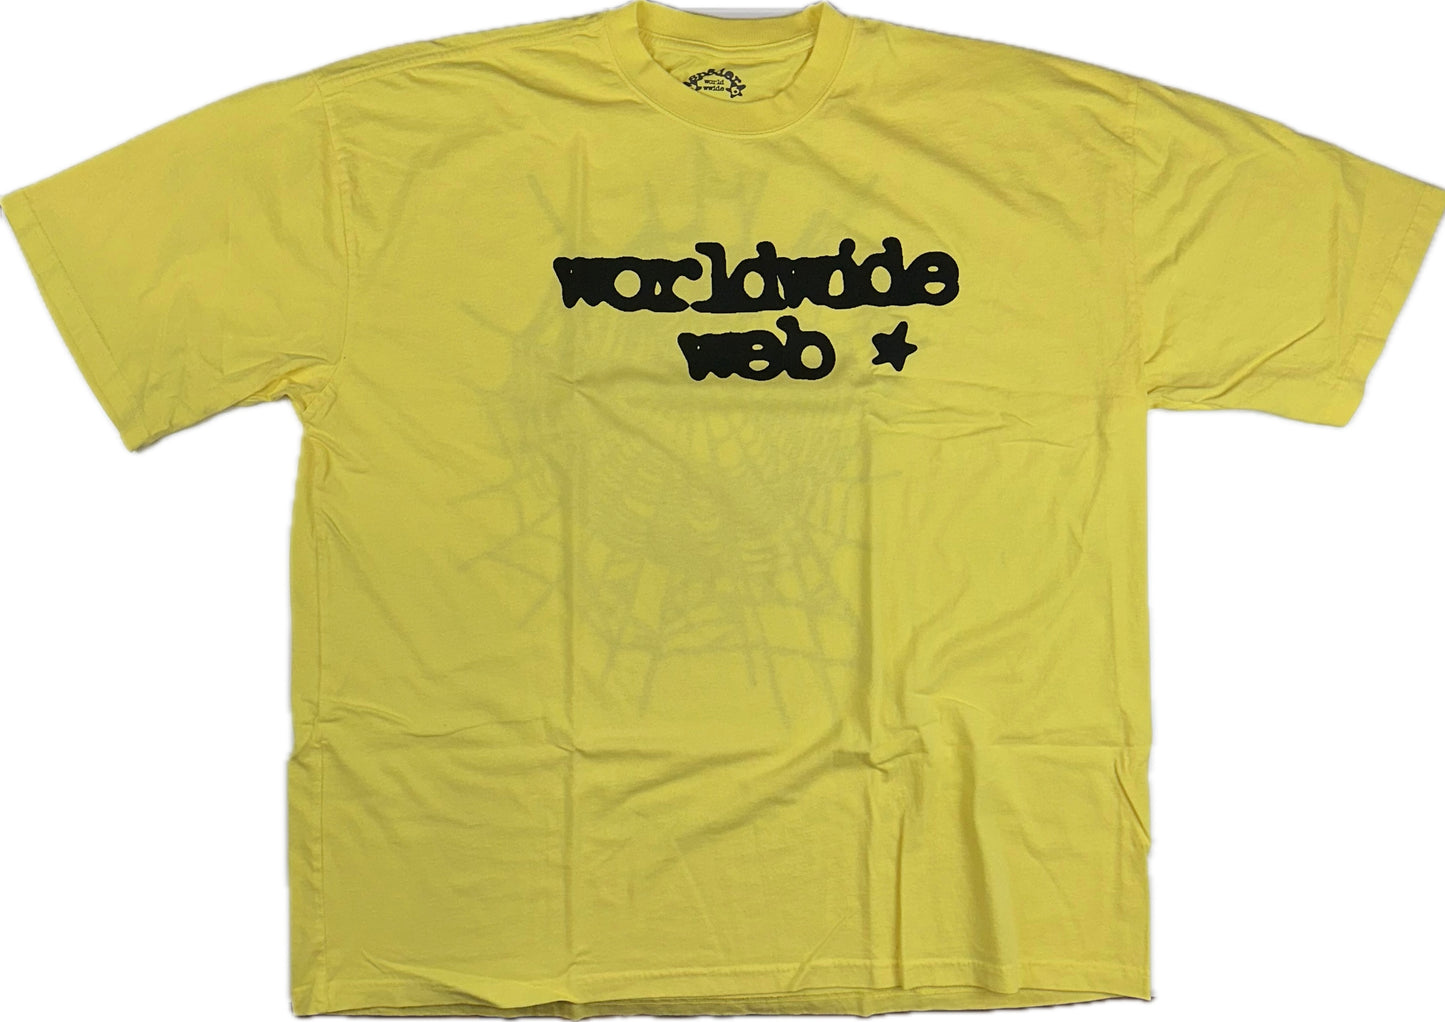 Sp5der Web T-shirt